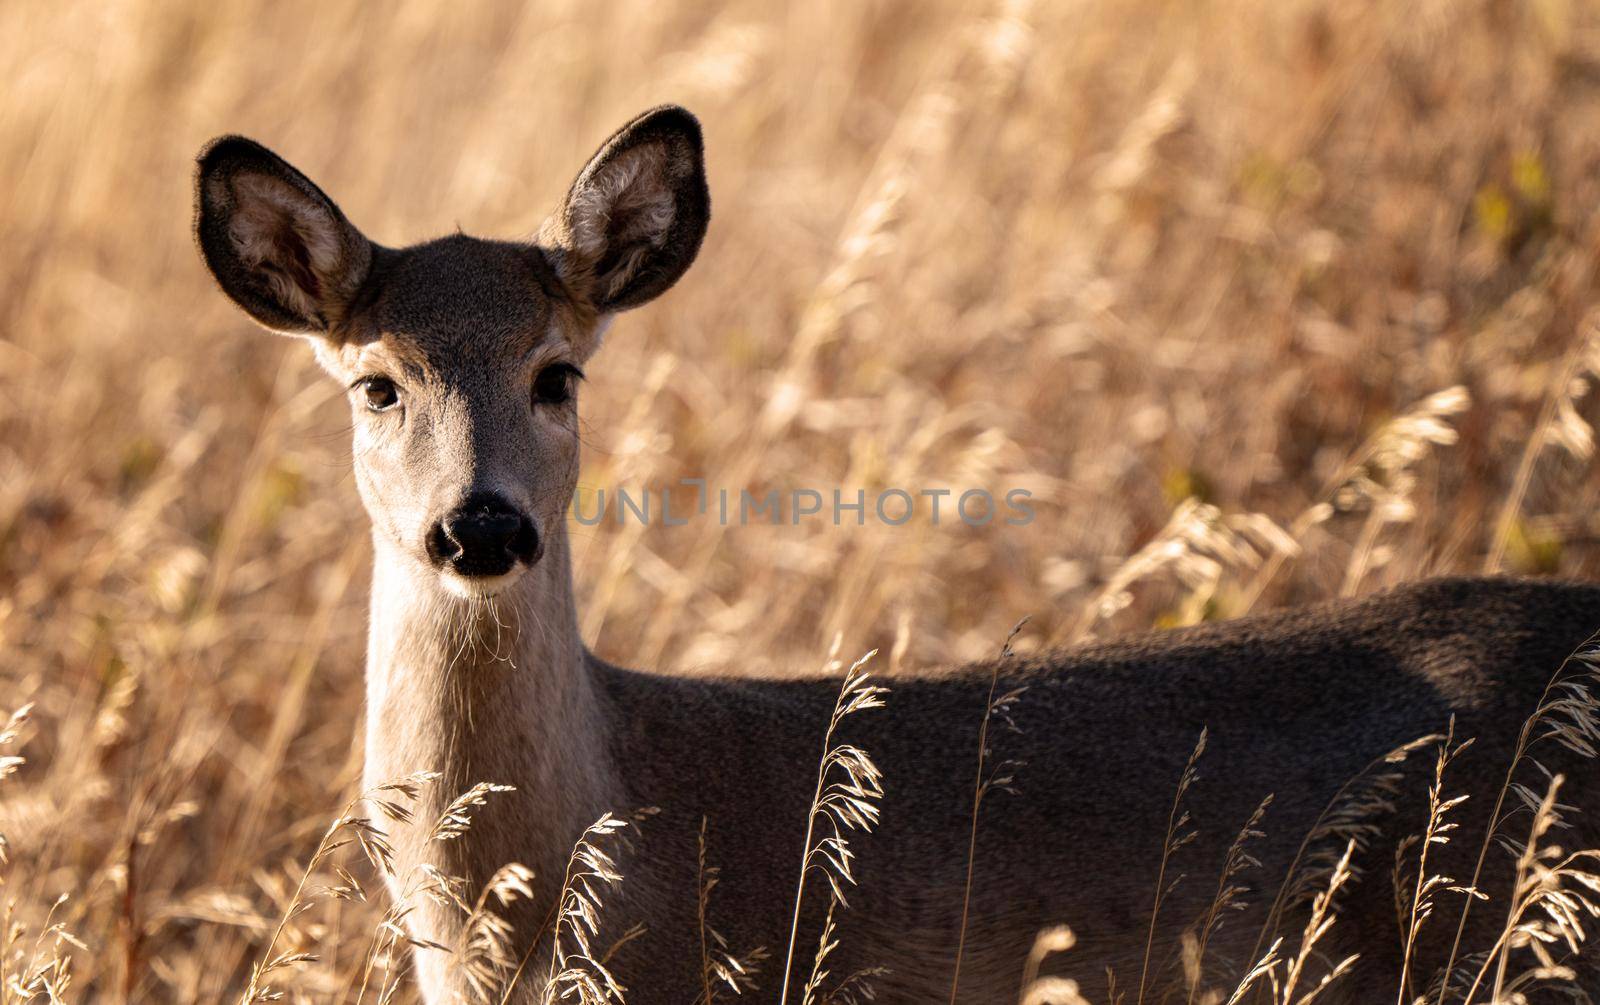 Deer in the Prairies of Saskatchewan Canada